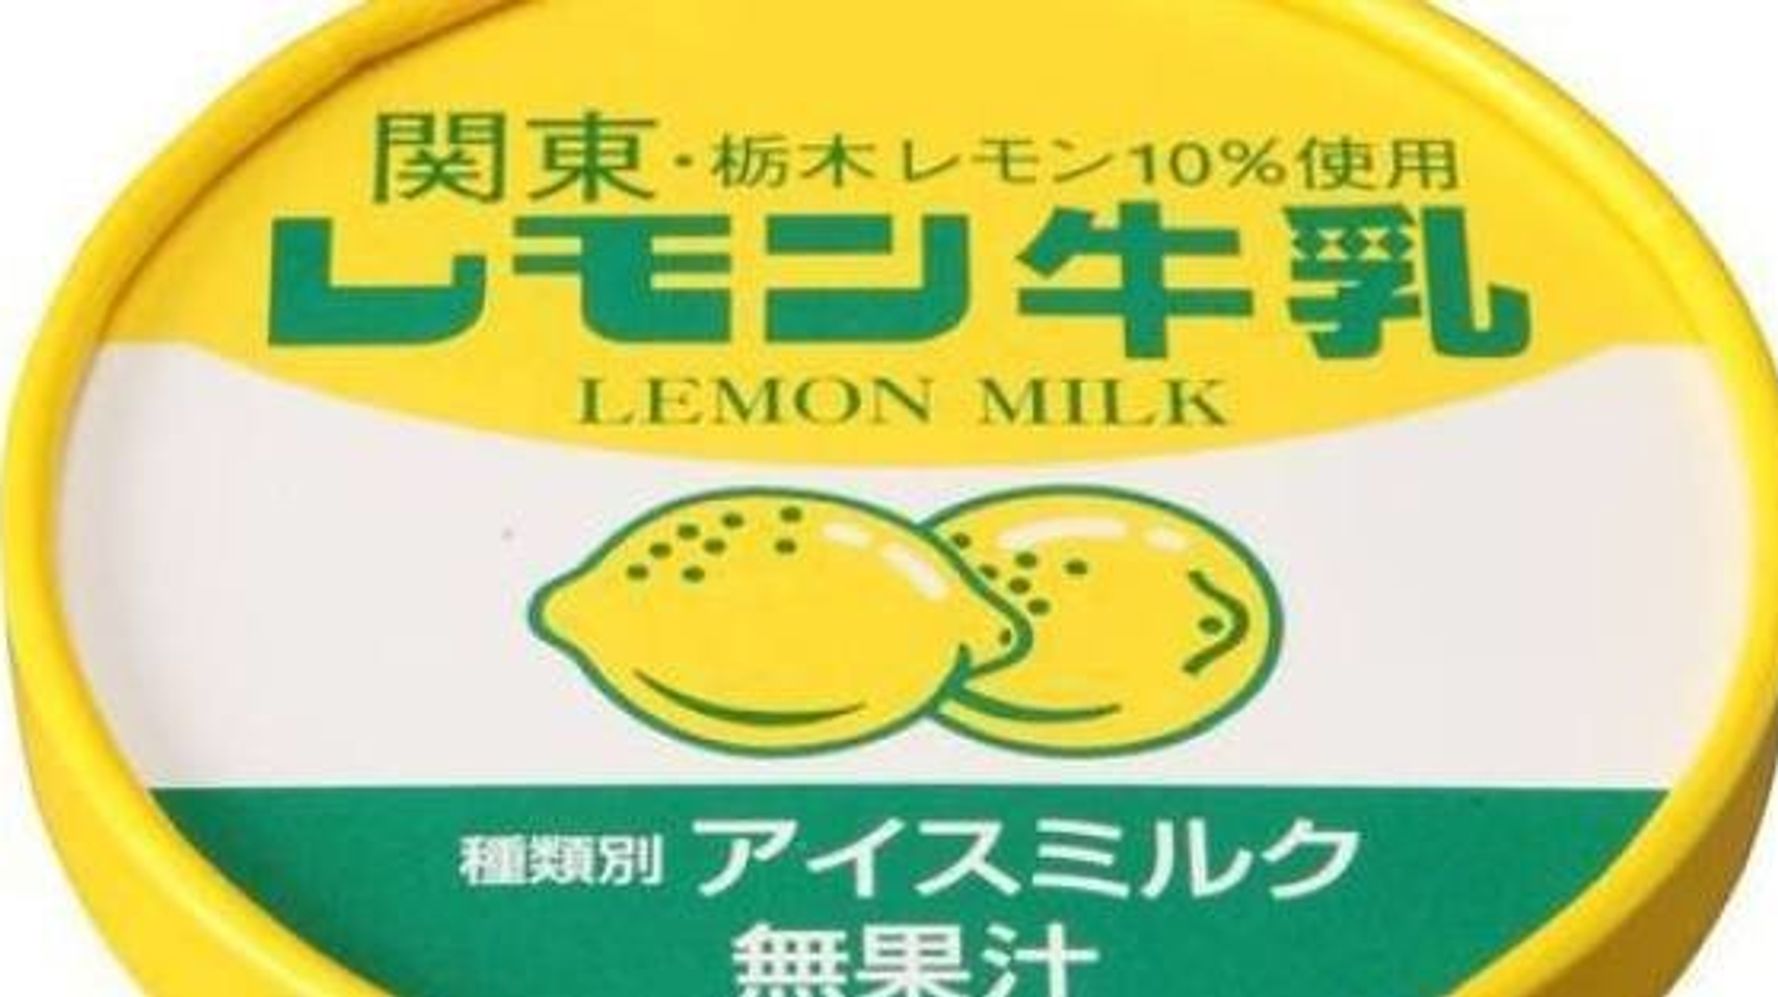 レモン10 使用なのに無果汁 レモン牛乳カップ の謎をメーカーに直接聞いてみた ハフポスト News